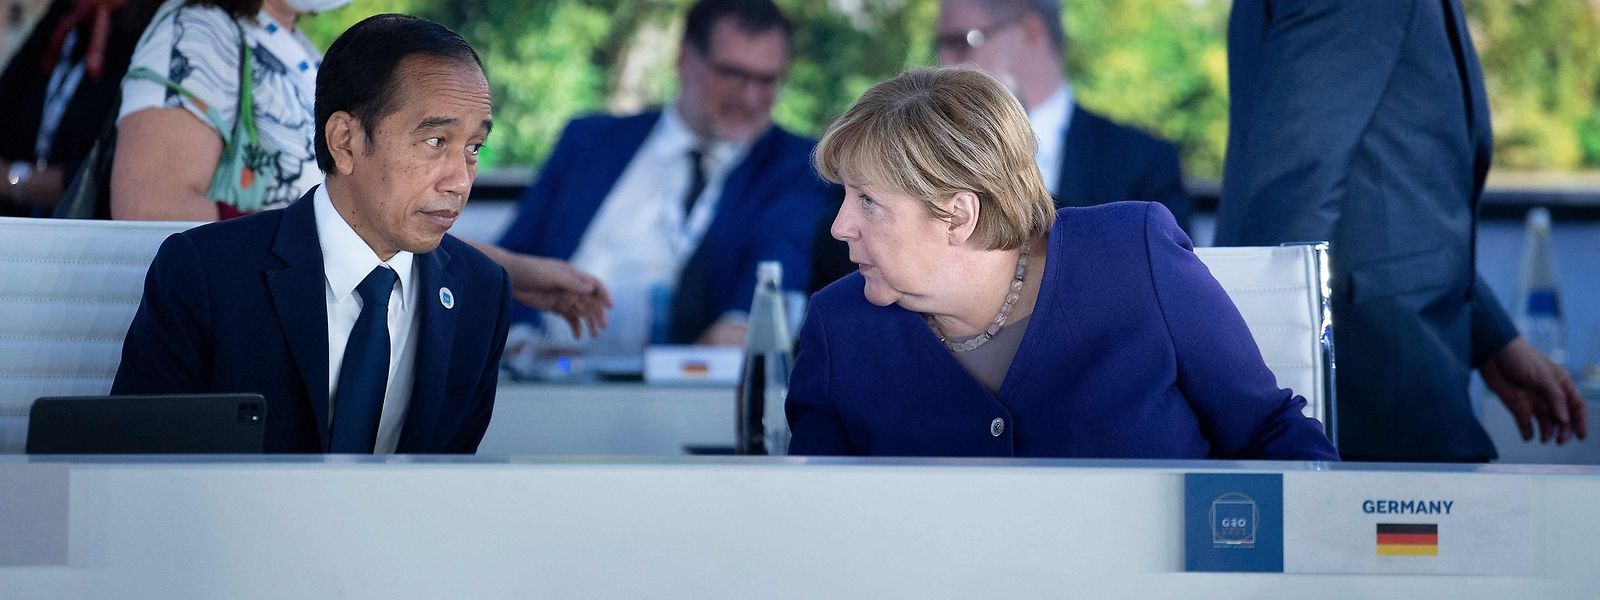 Die deutsche Kanzlerin Angela Merkel verabschiedete sich nach 16 Jahren von der Weltbühne.